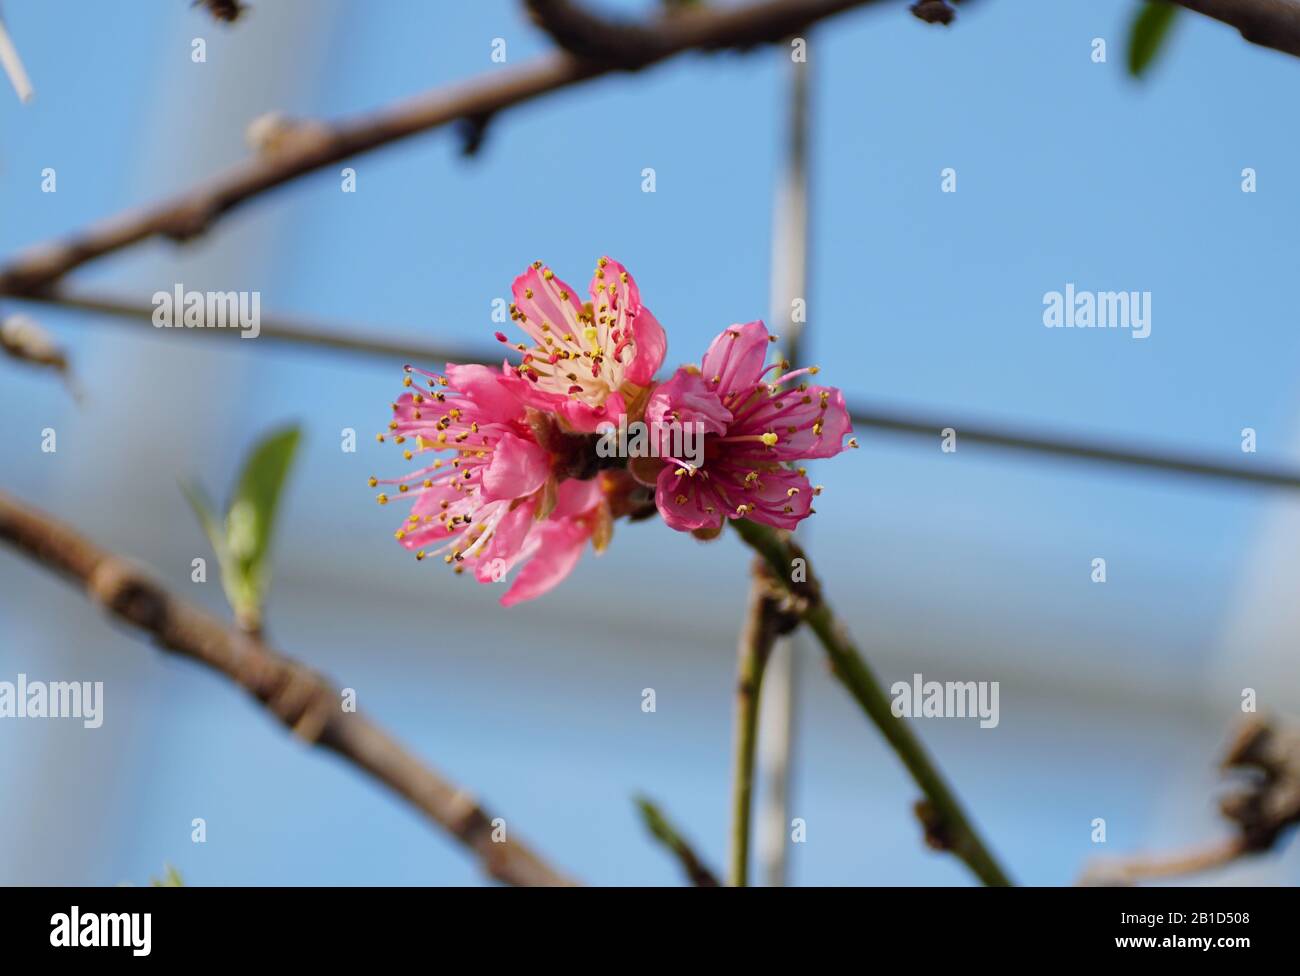 Rosa nettarine 'Garden state' fiori sull'albero in primavera Foto Stock